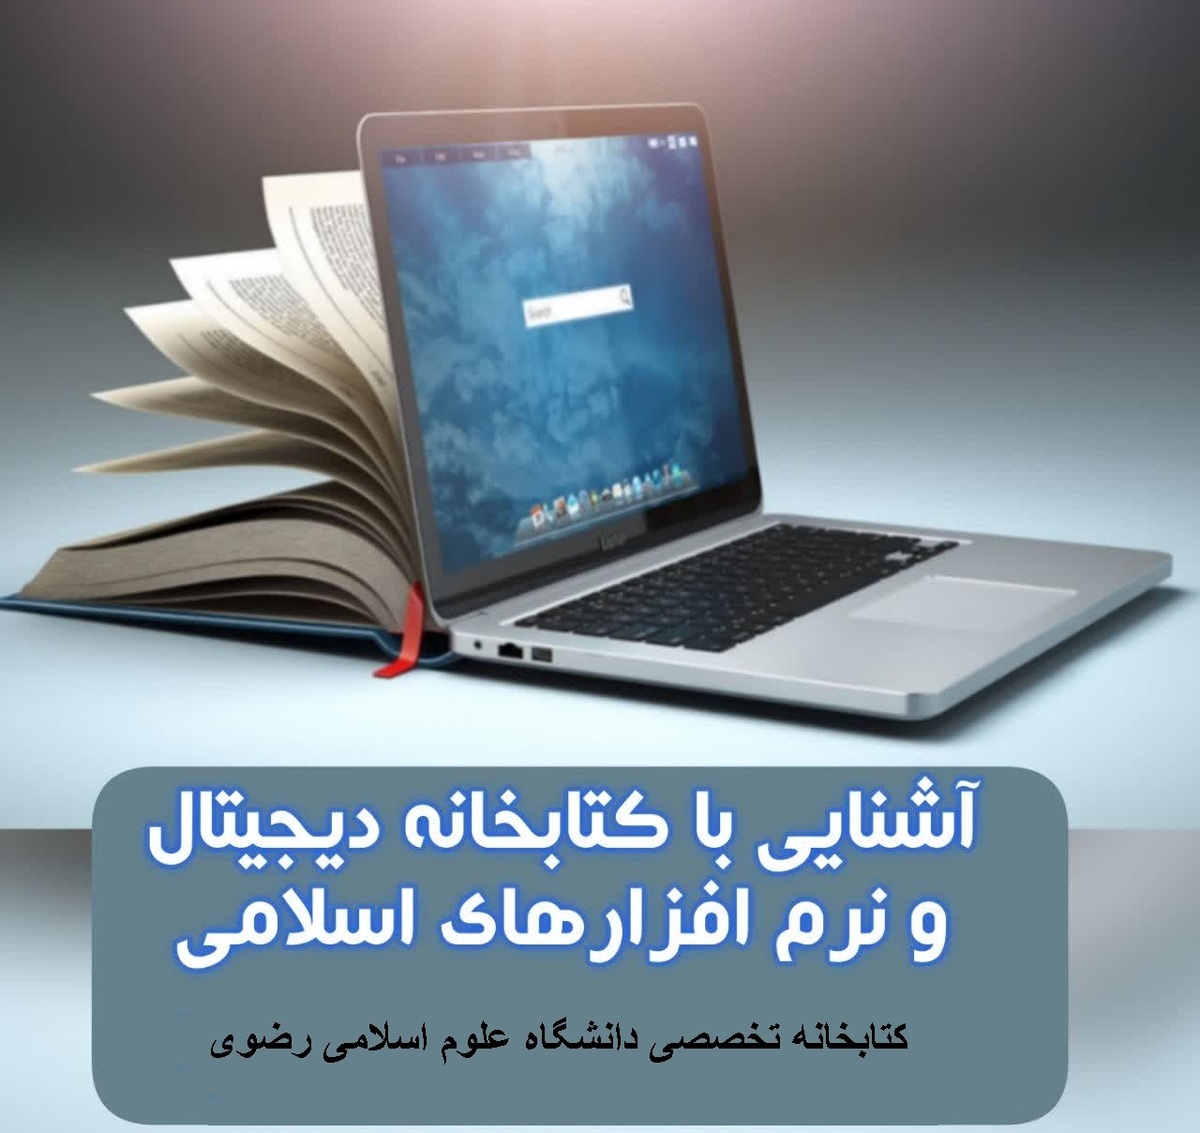 کارگاه آشنایی با کتابخانه دیجیتال و نرم افزار های اسلامی برگزار شد